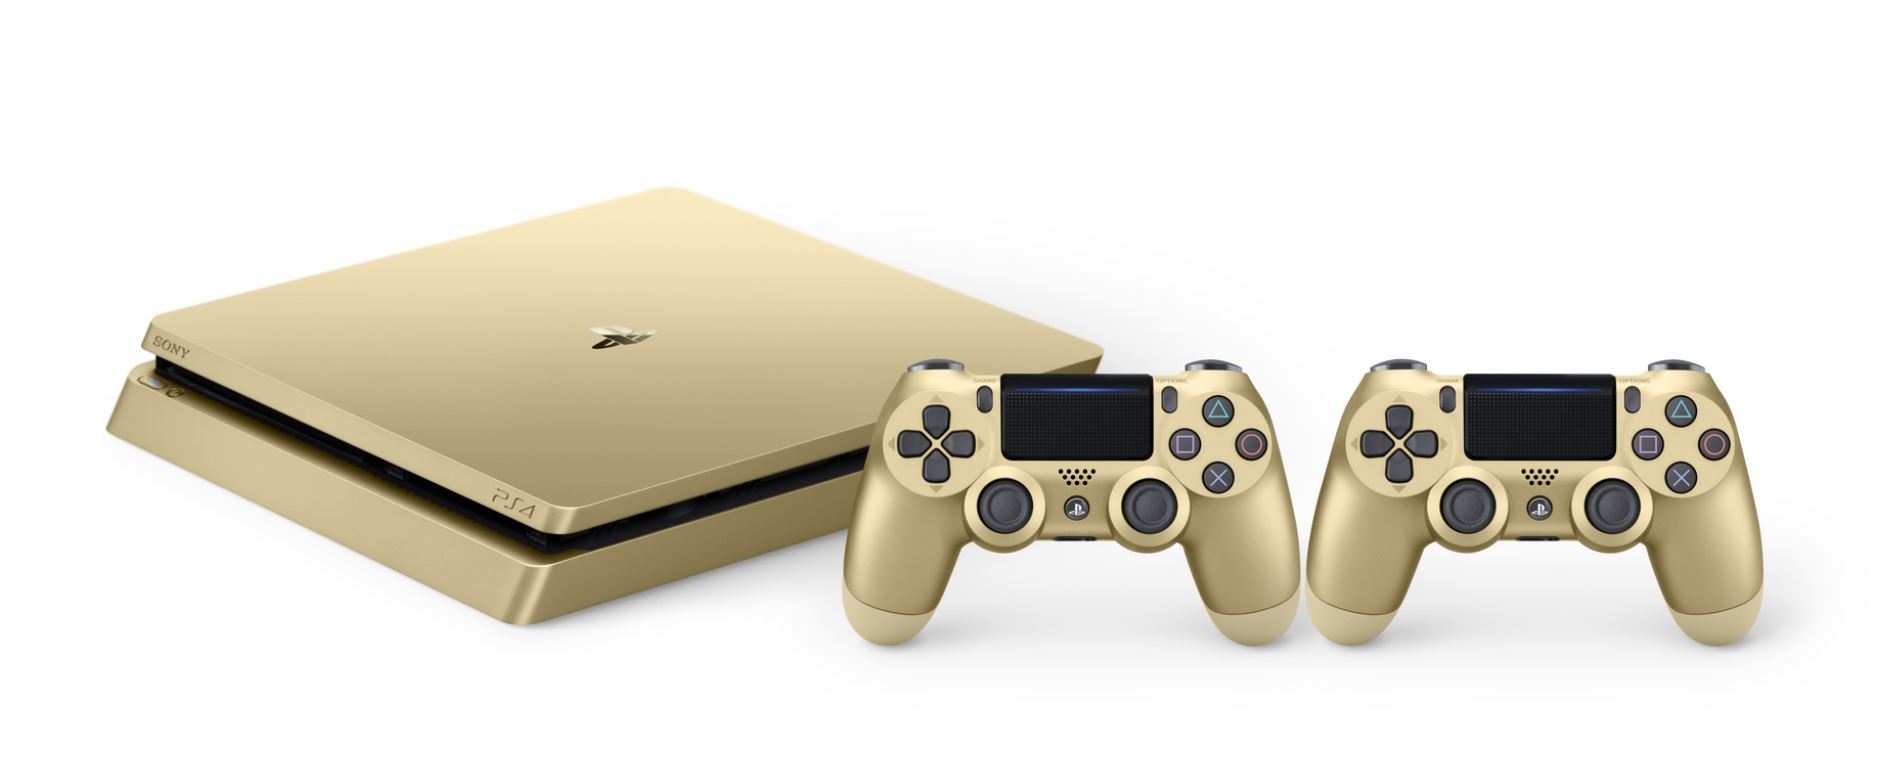 Limitowana edycja systemu PlayStation 4 w kolorze złotym i srebrnym dołączy do rodziny PlayStation